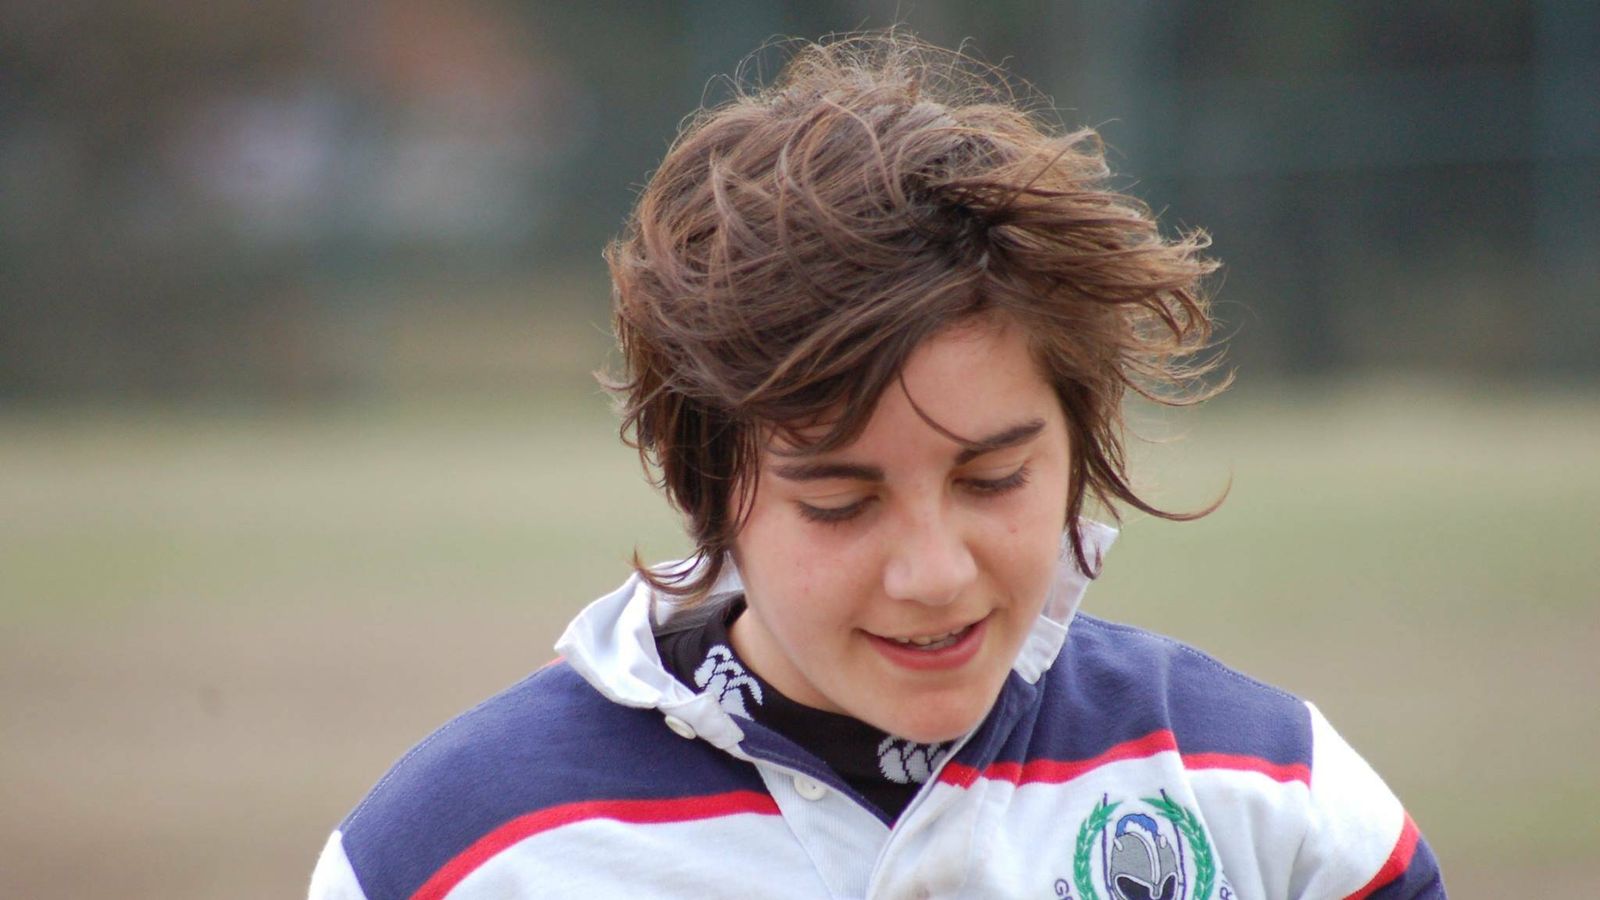 Patricia García, en su primer equipo de rugby, Geografía e Historia. (UCM Rugby)